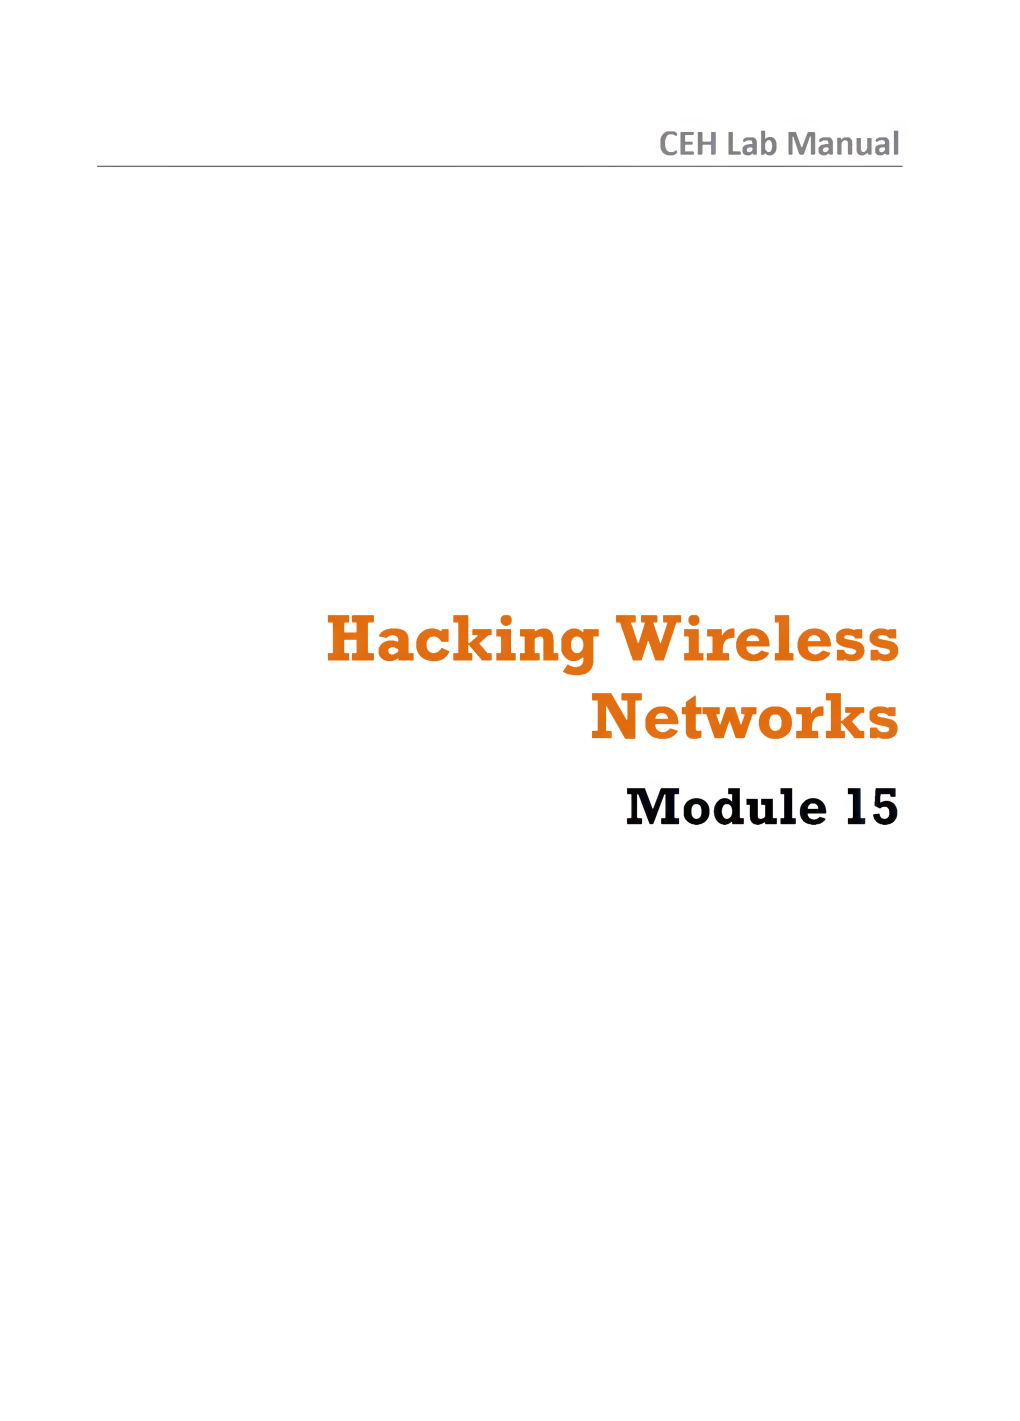 Hacking Wireless Networks Module 15 Module 15 - Hacking Wireless Networks